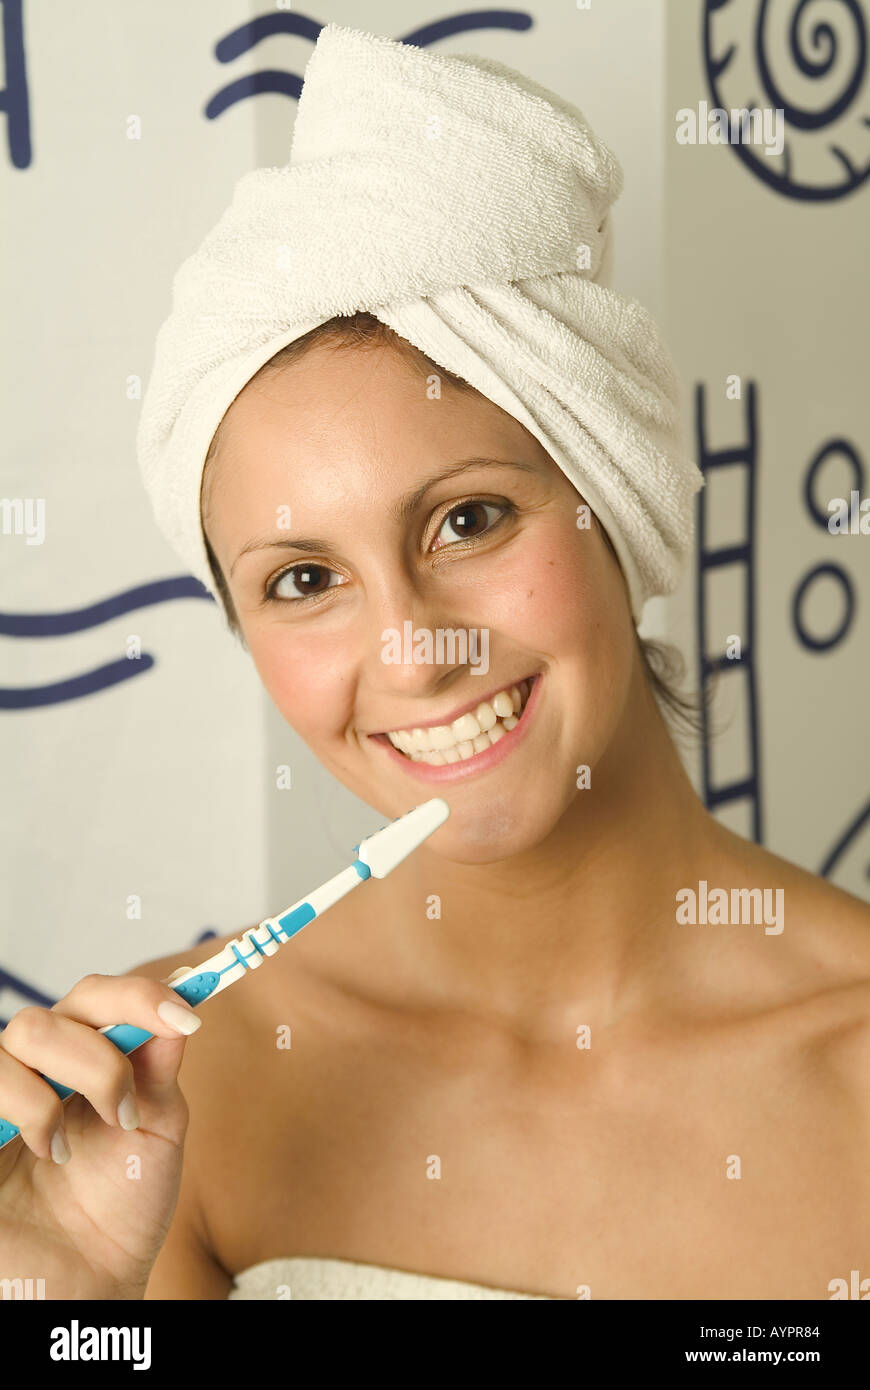 Eine junge Frau hält eine Zahnbürste, während sie ein breites Lächeln vor der Kamera gibt Stockfoto